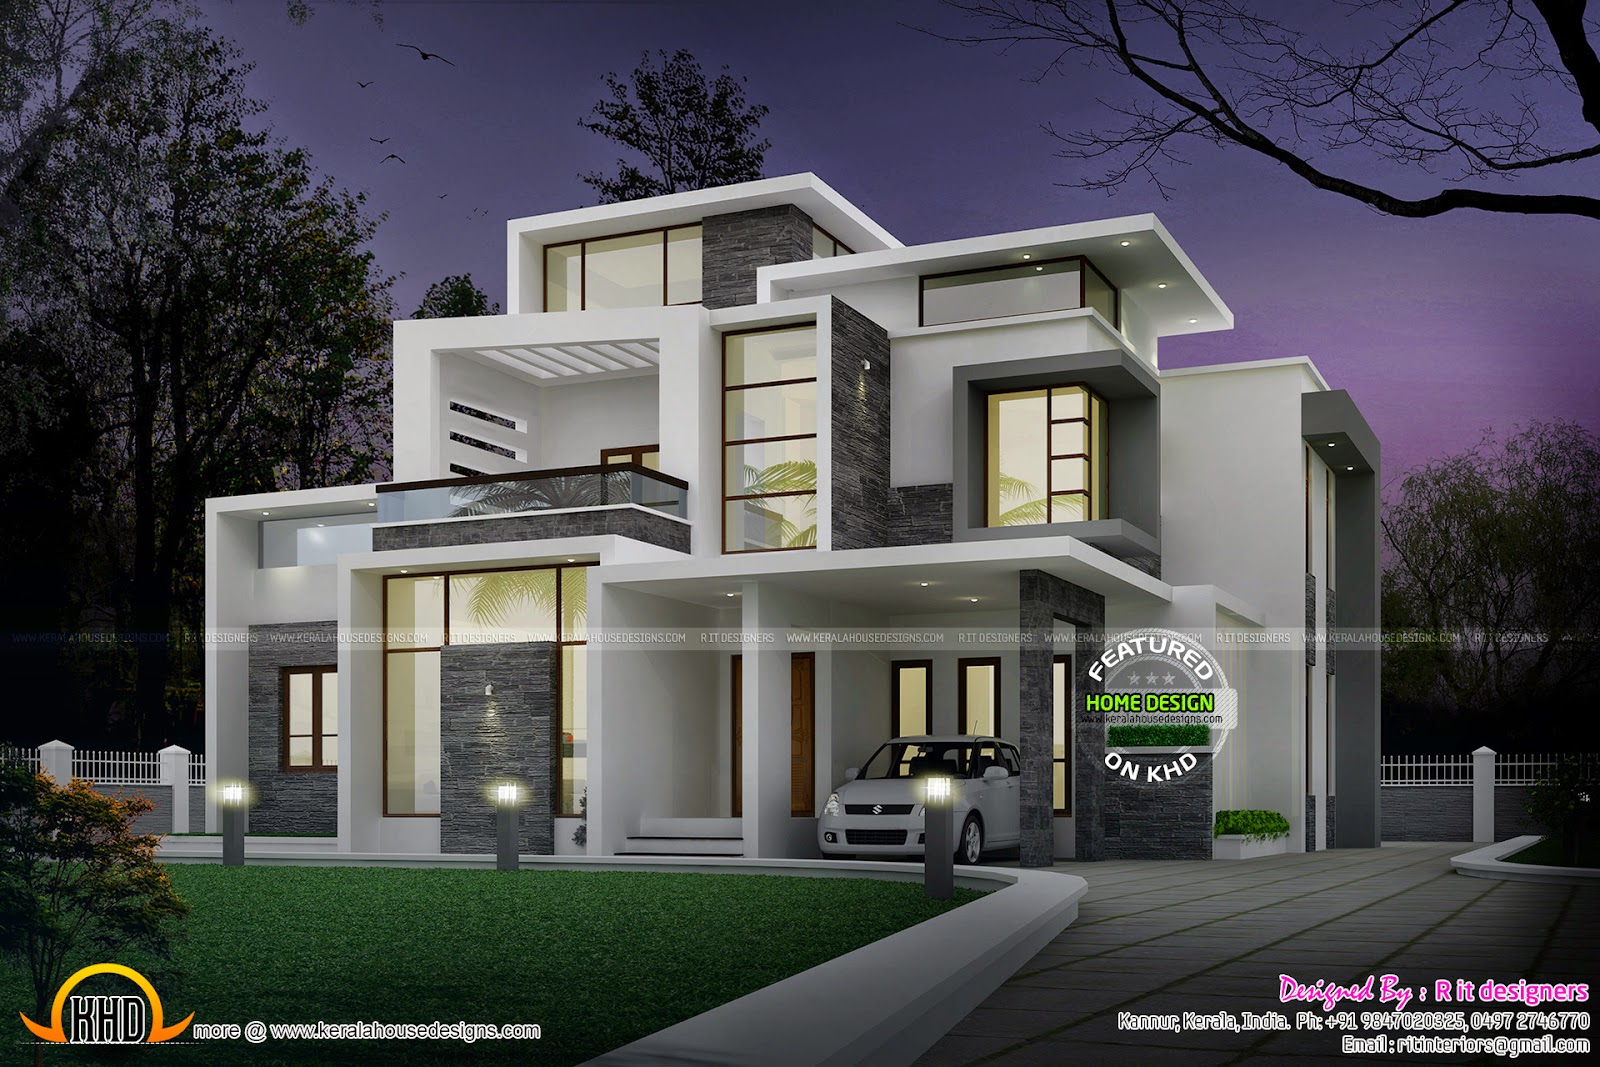 Grand contemporary home design  Kerala home design and floor plans